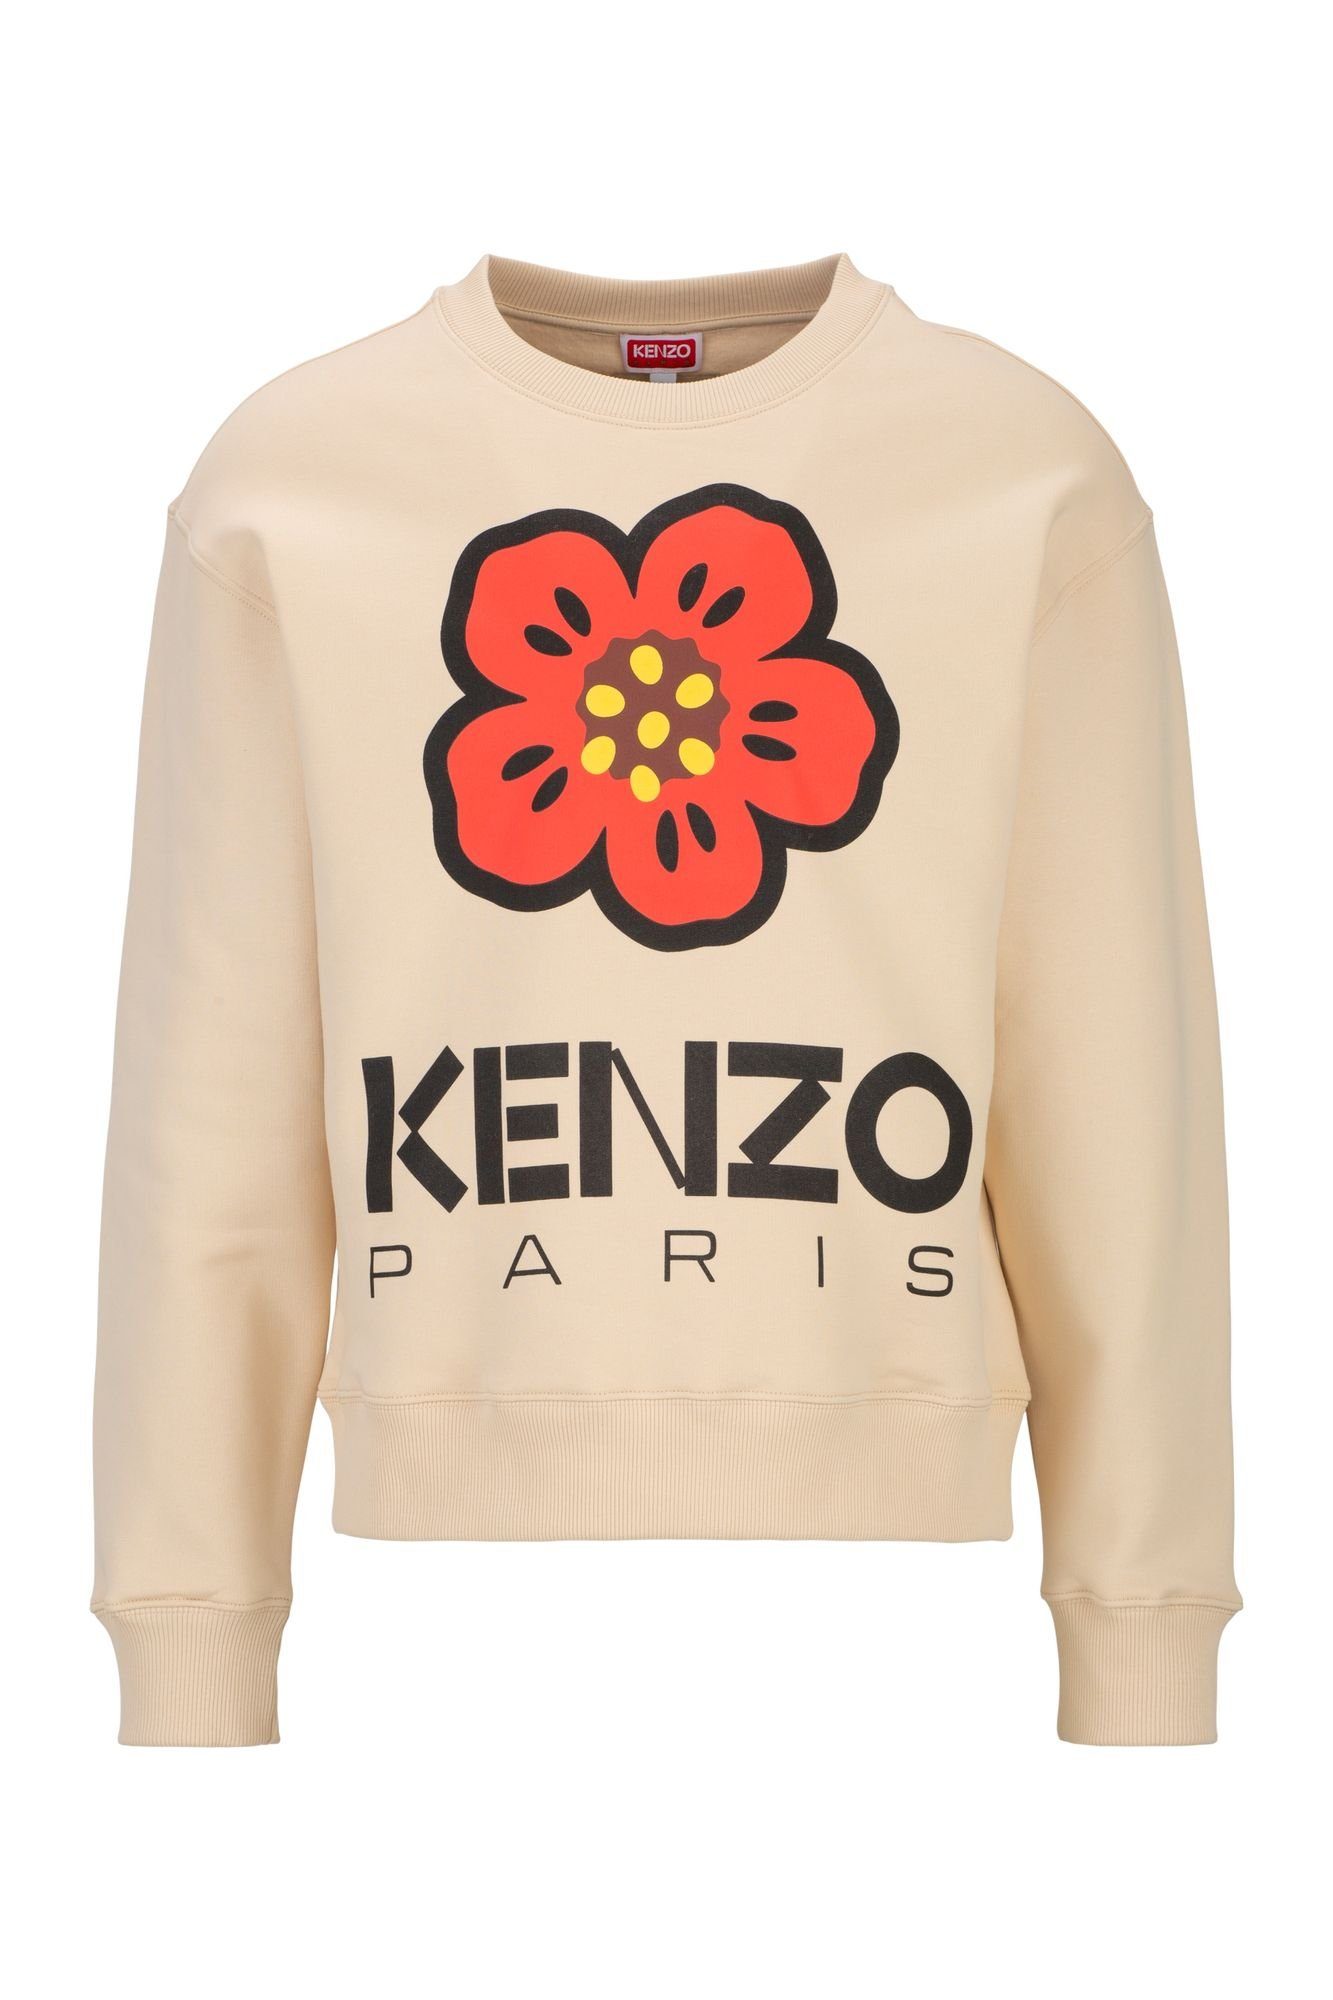 KENZO Sweatshirt Flower Print mit ikonischem roten Blumenmotiv und Logo-Print